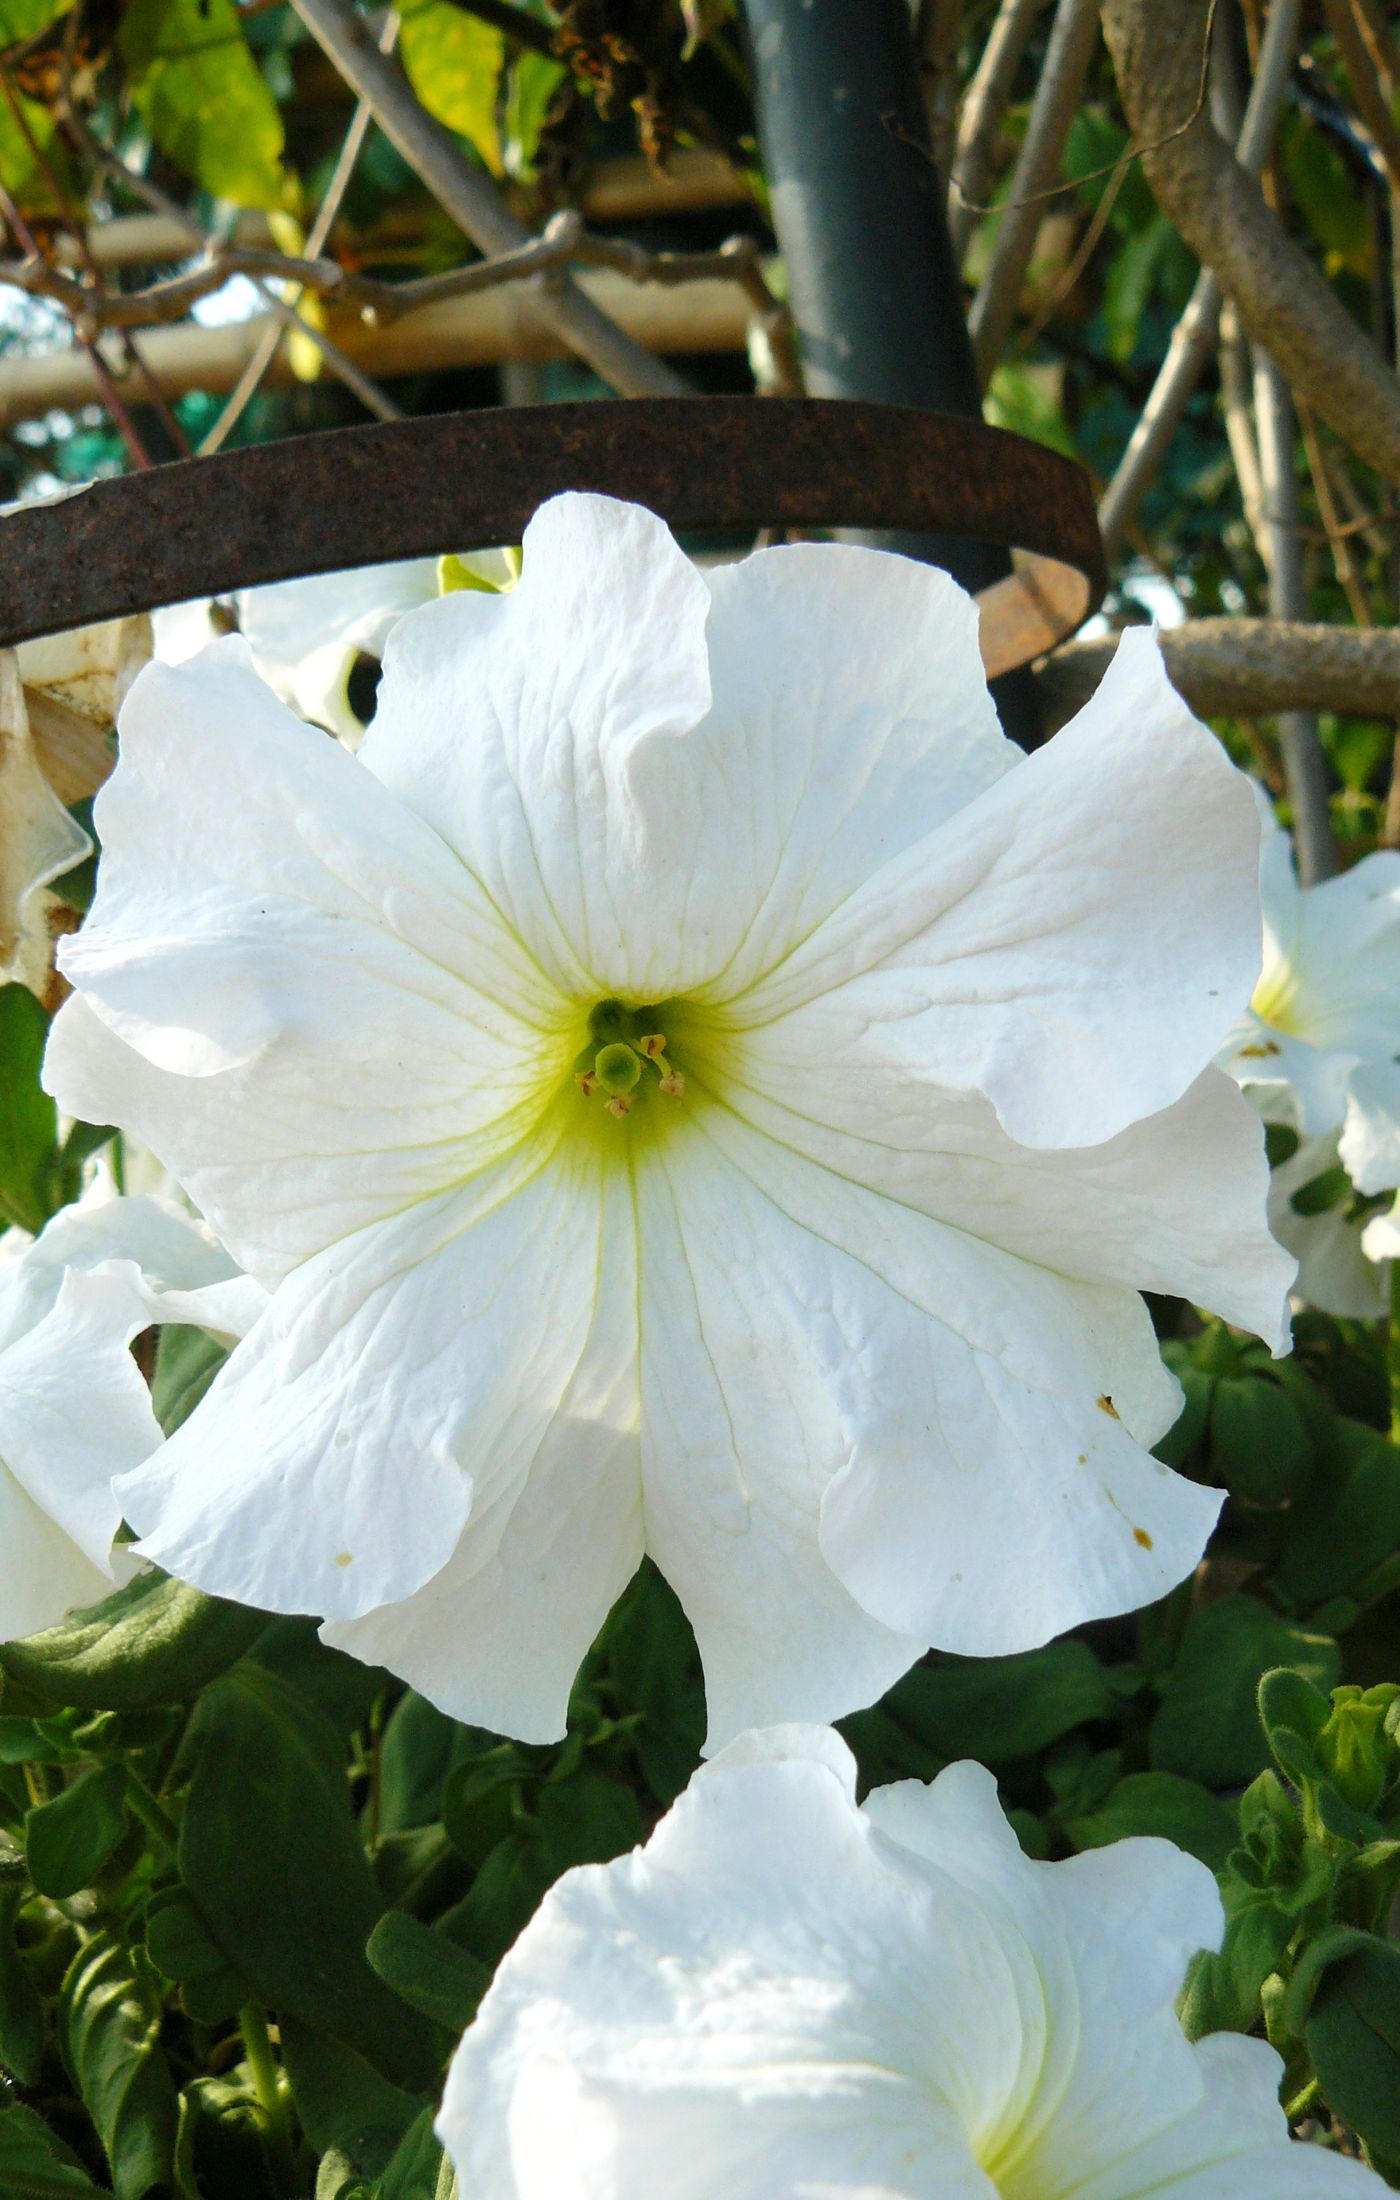 How to grow petunias - white petunias